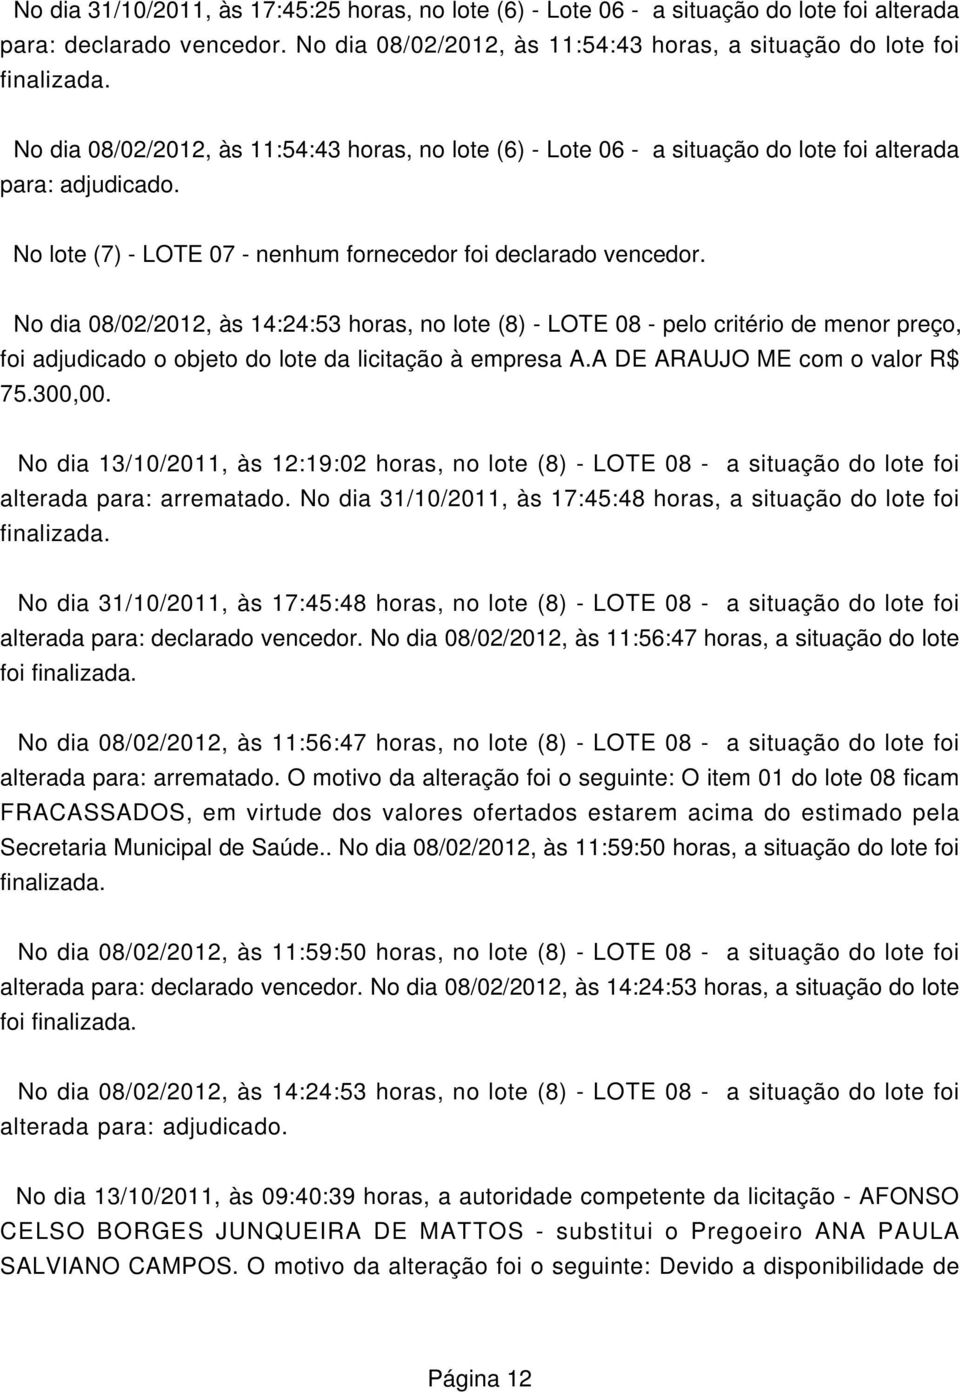 No dia 08/02/2012, às 14:24:53 horas, no lote (8) - LOTE 08 - pelo critério de menor preço, foi adjudicado o objeto do lote da licitação à empresa A.A DE ARAUJO ME com o valor R$ 75.300,00.